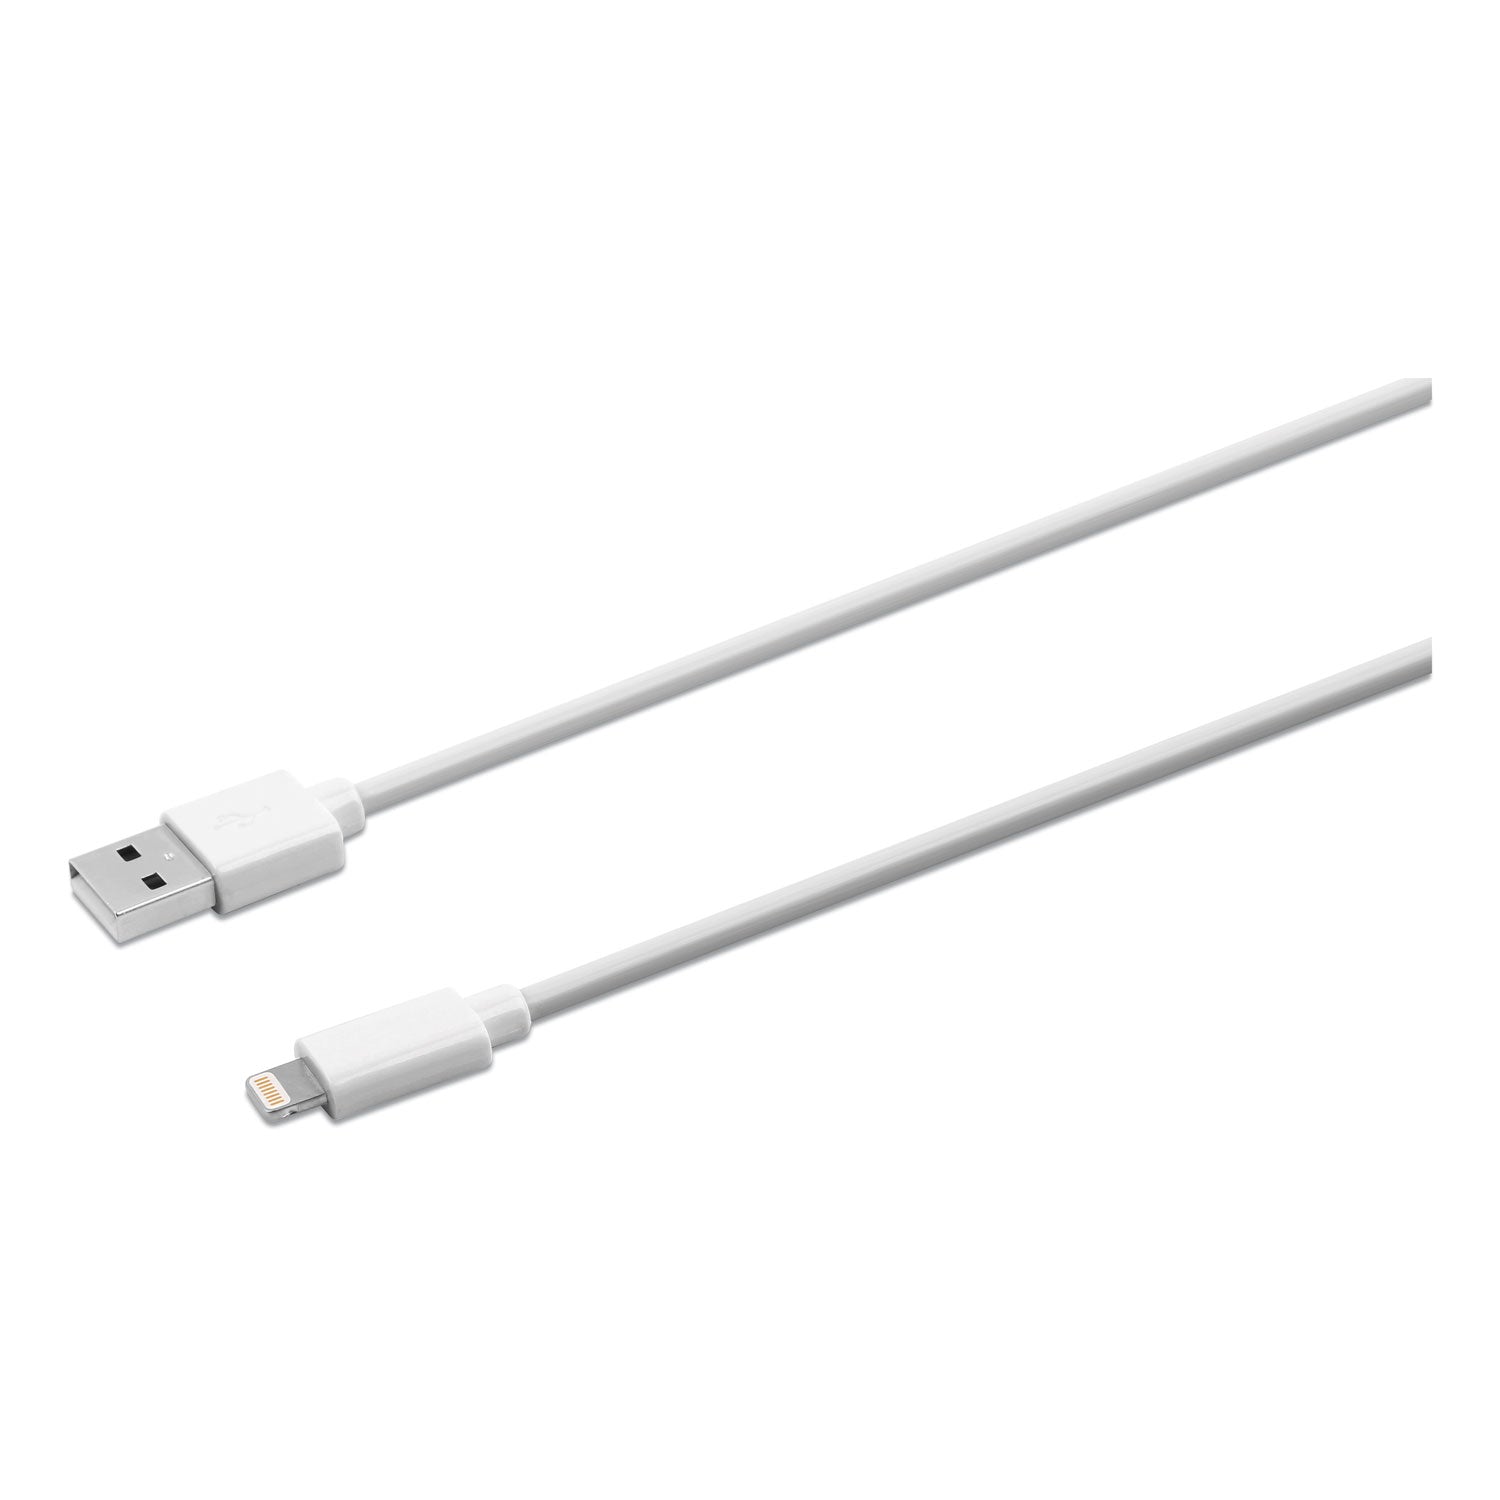 usb-apple-lightning-cable-10-ft-white_ivr30022 - 1